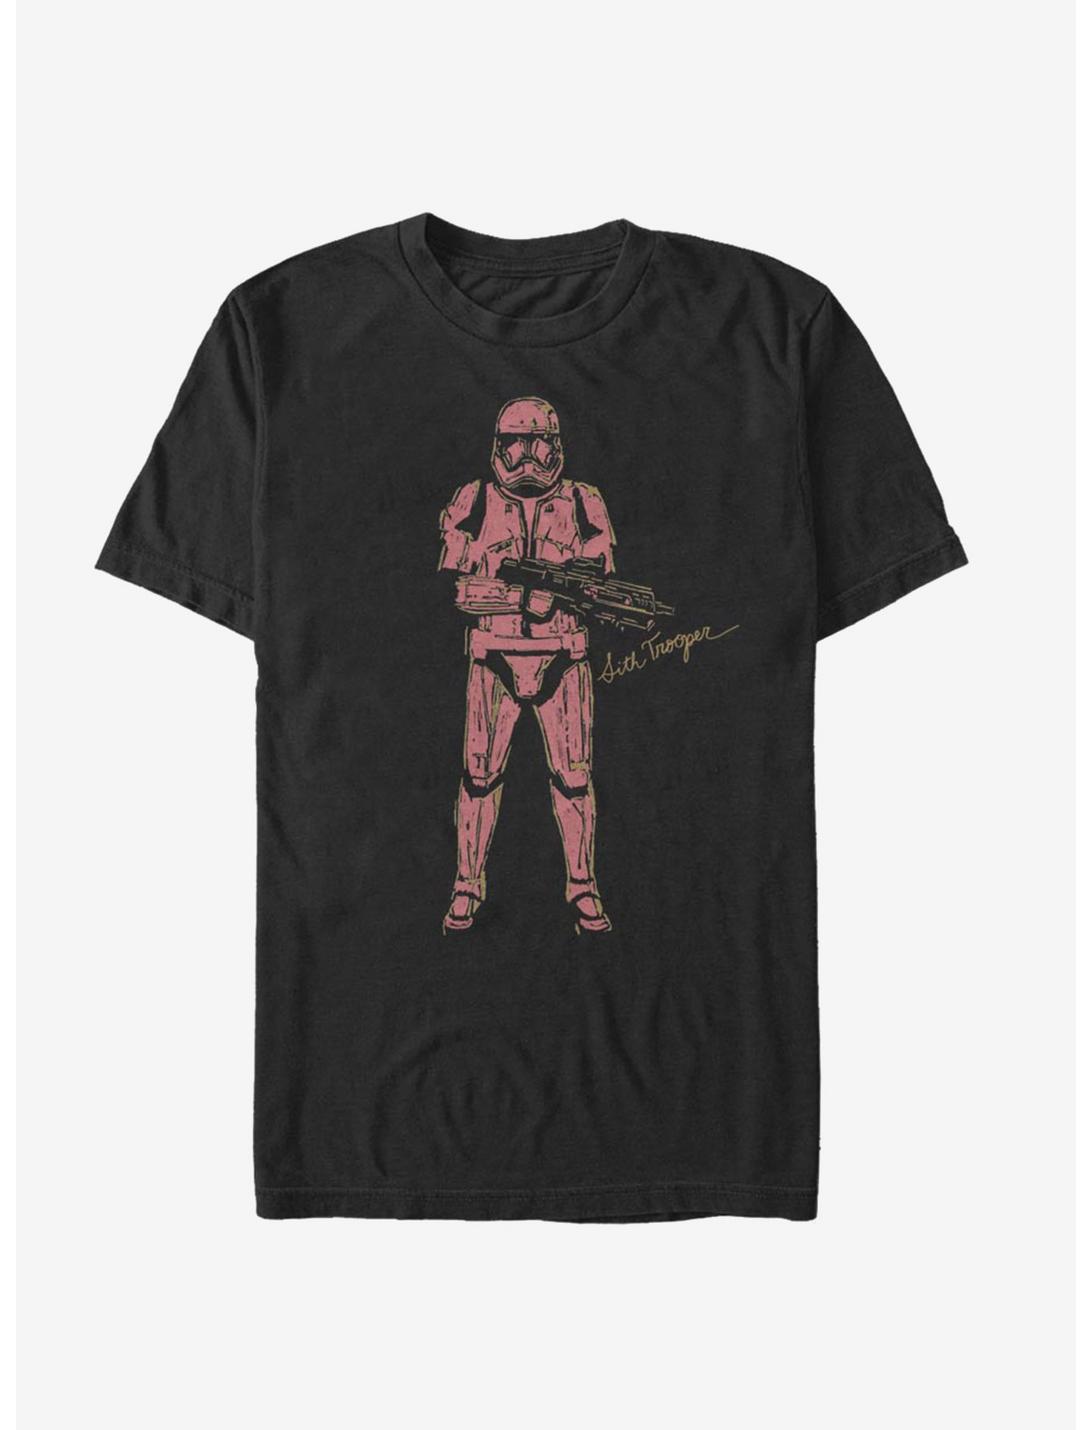 Star Wars Episode IX The Rise Of Skywalker Red Trooper T-Shirt, BLACK, hi-res